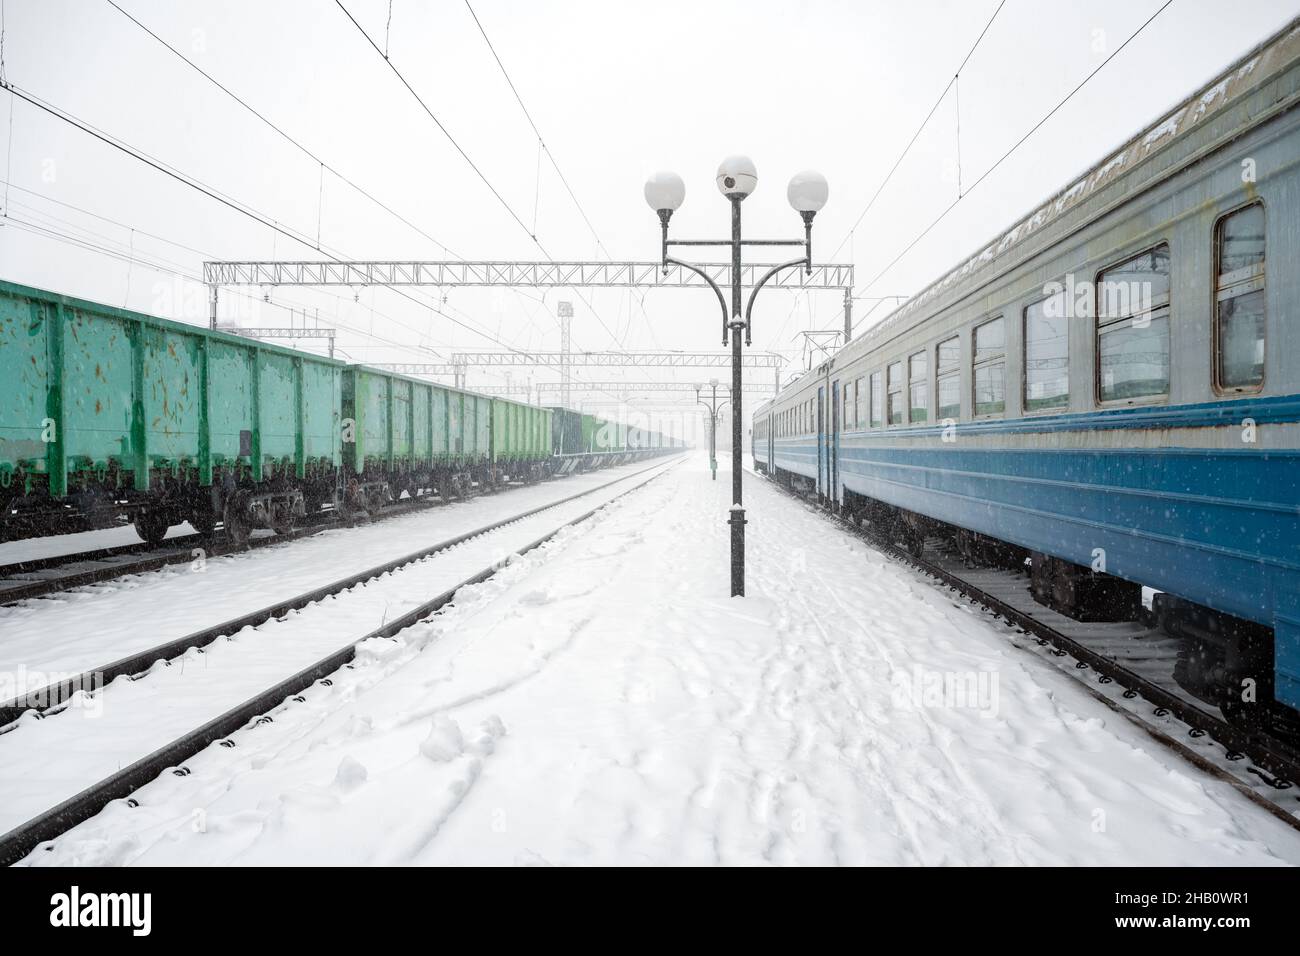 Bahnhof peron im Winter von Schnee bedeckt. Personenzug und Güterwagen auf verschneiten Eisenbahnen. Ukraine, Europa Stockfoto